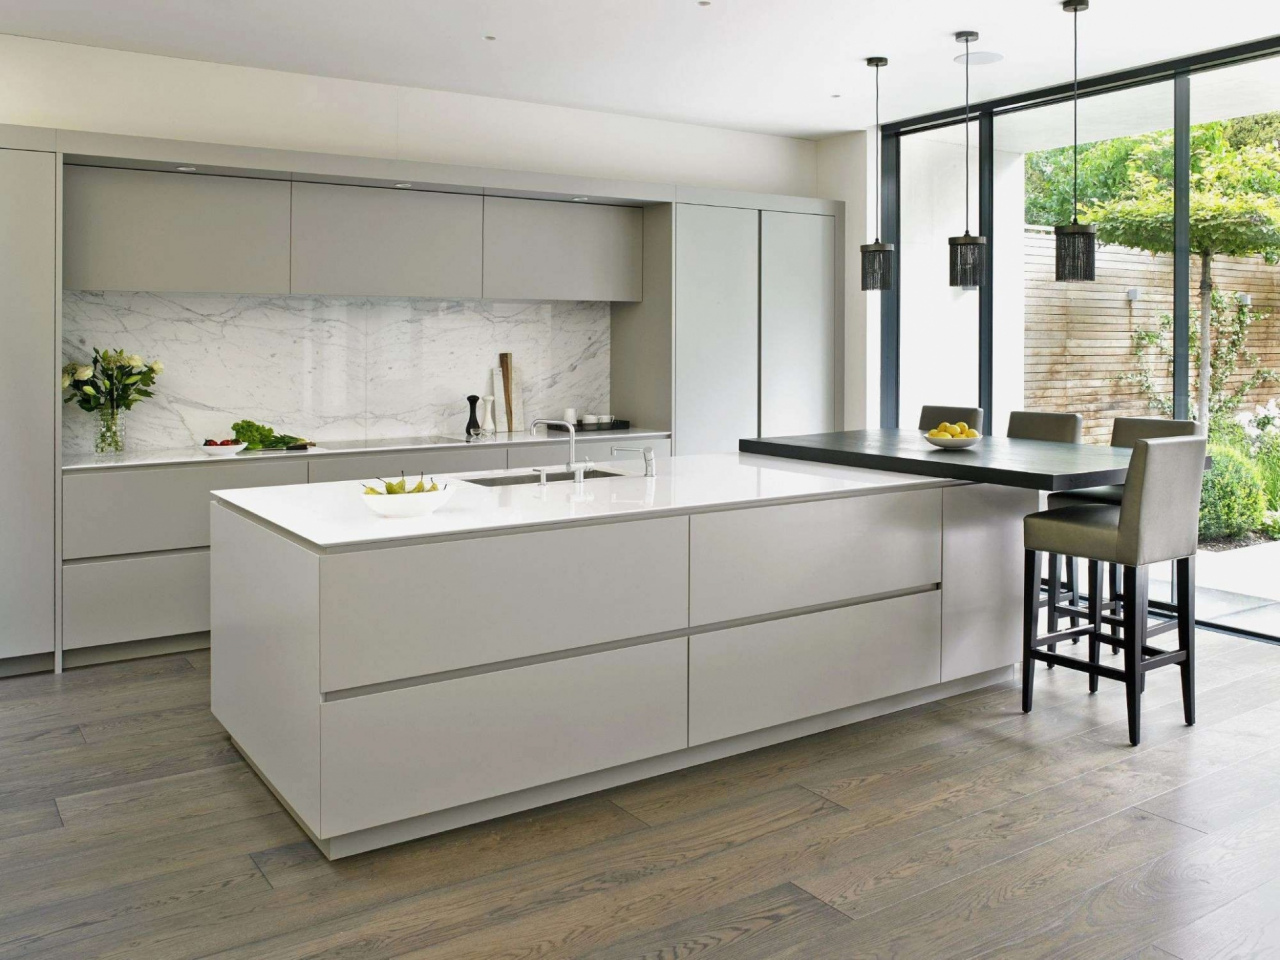 White Brick Backsplash Kitchen Luxury Kitchen Tiles Design — Procura Home Blog